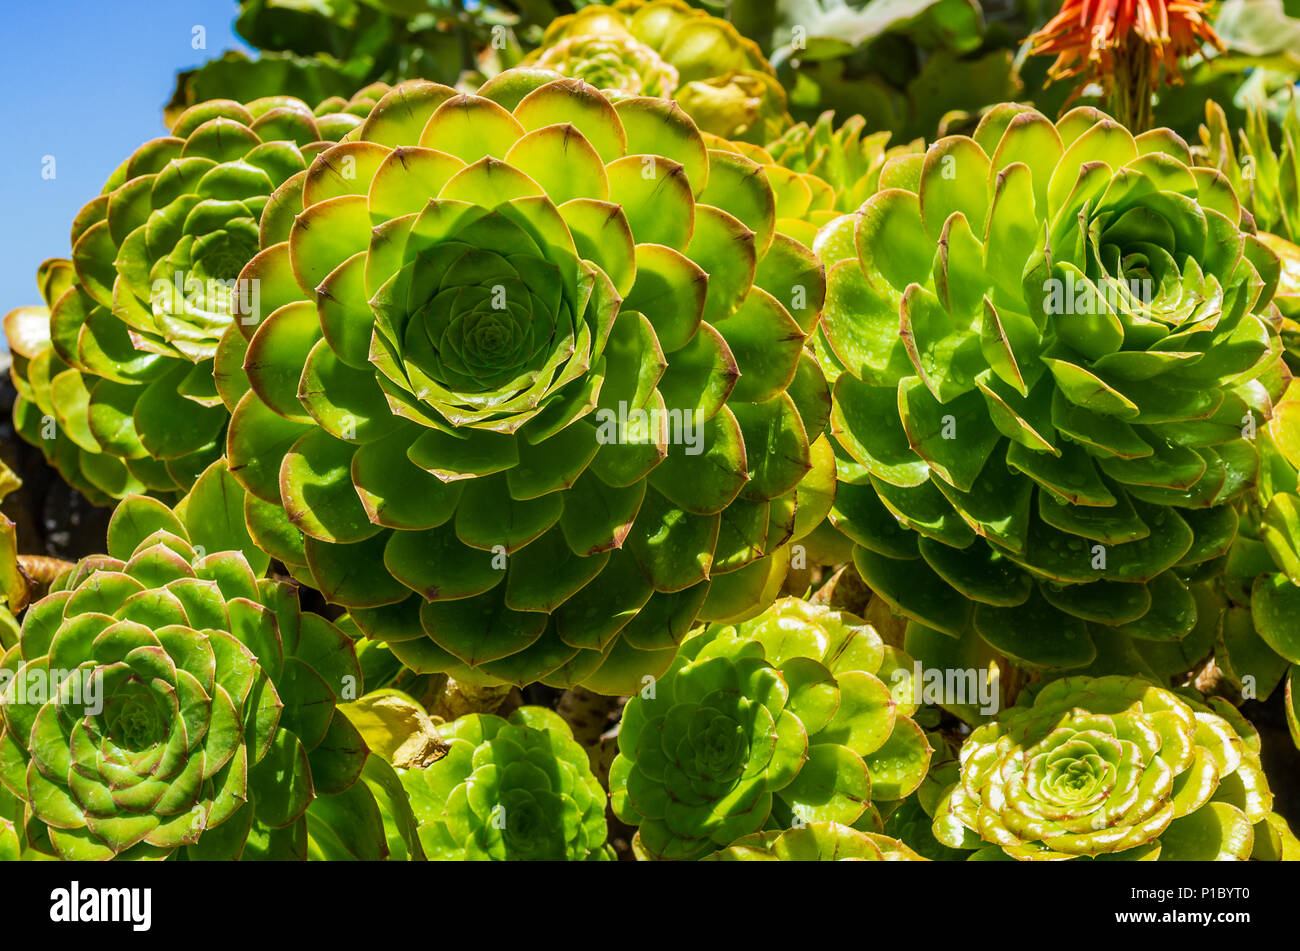 Close-Up of succulent plants, Aeonium arboreum, La Palma Stock Photo